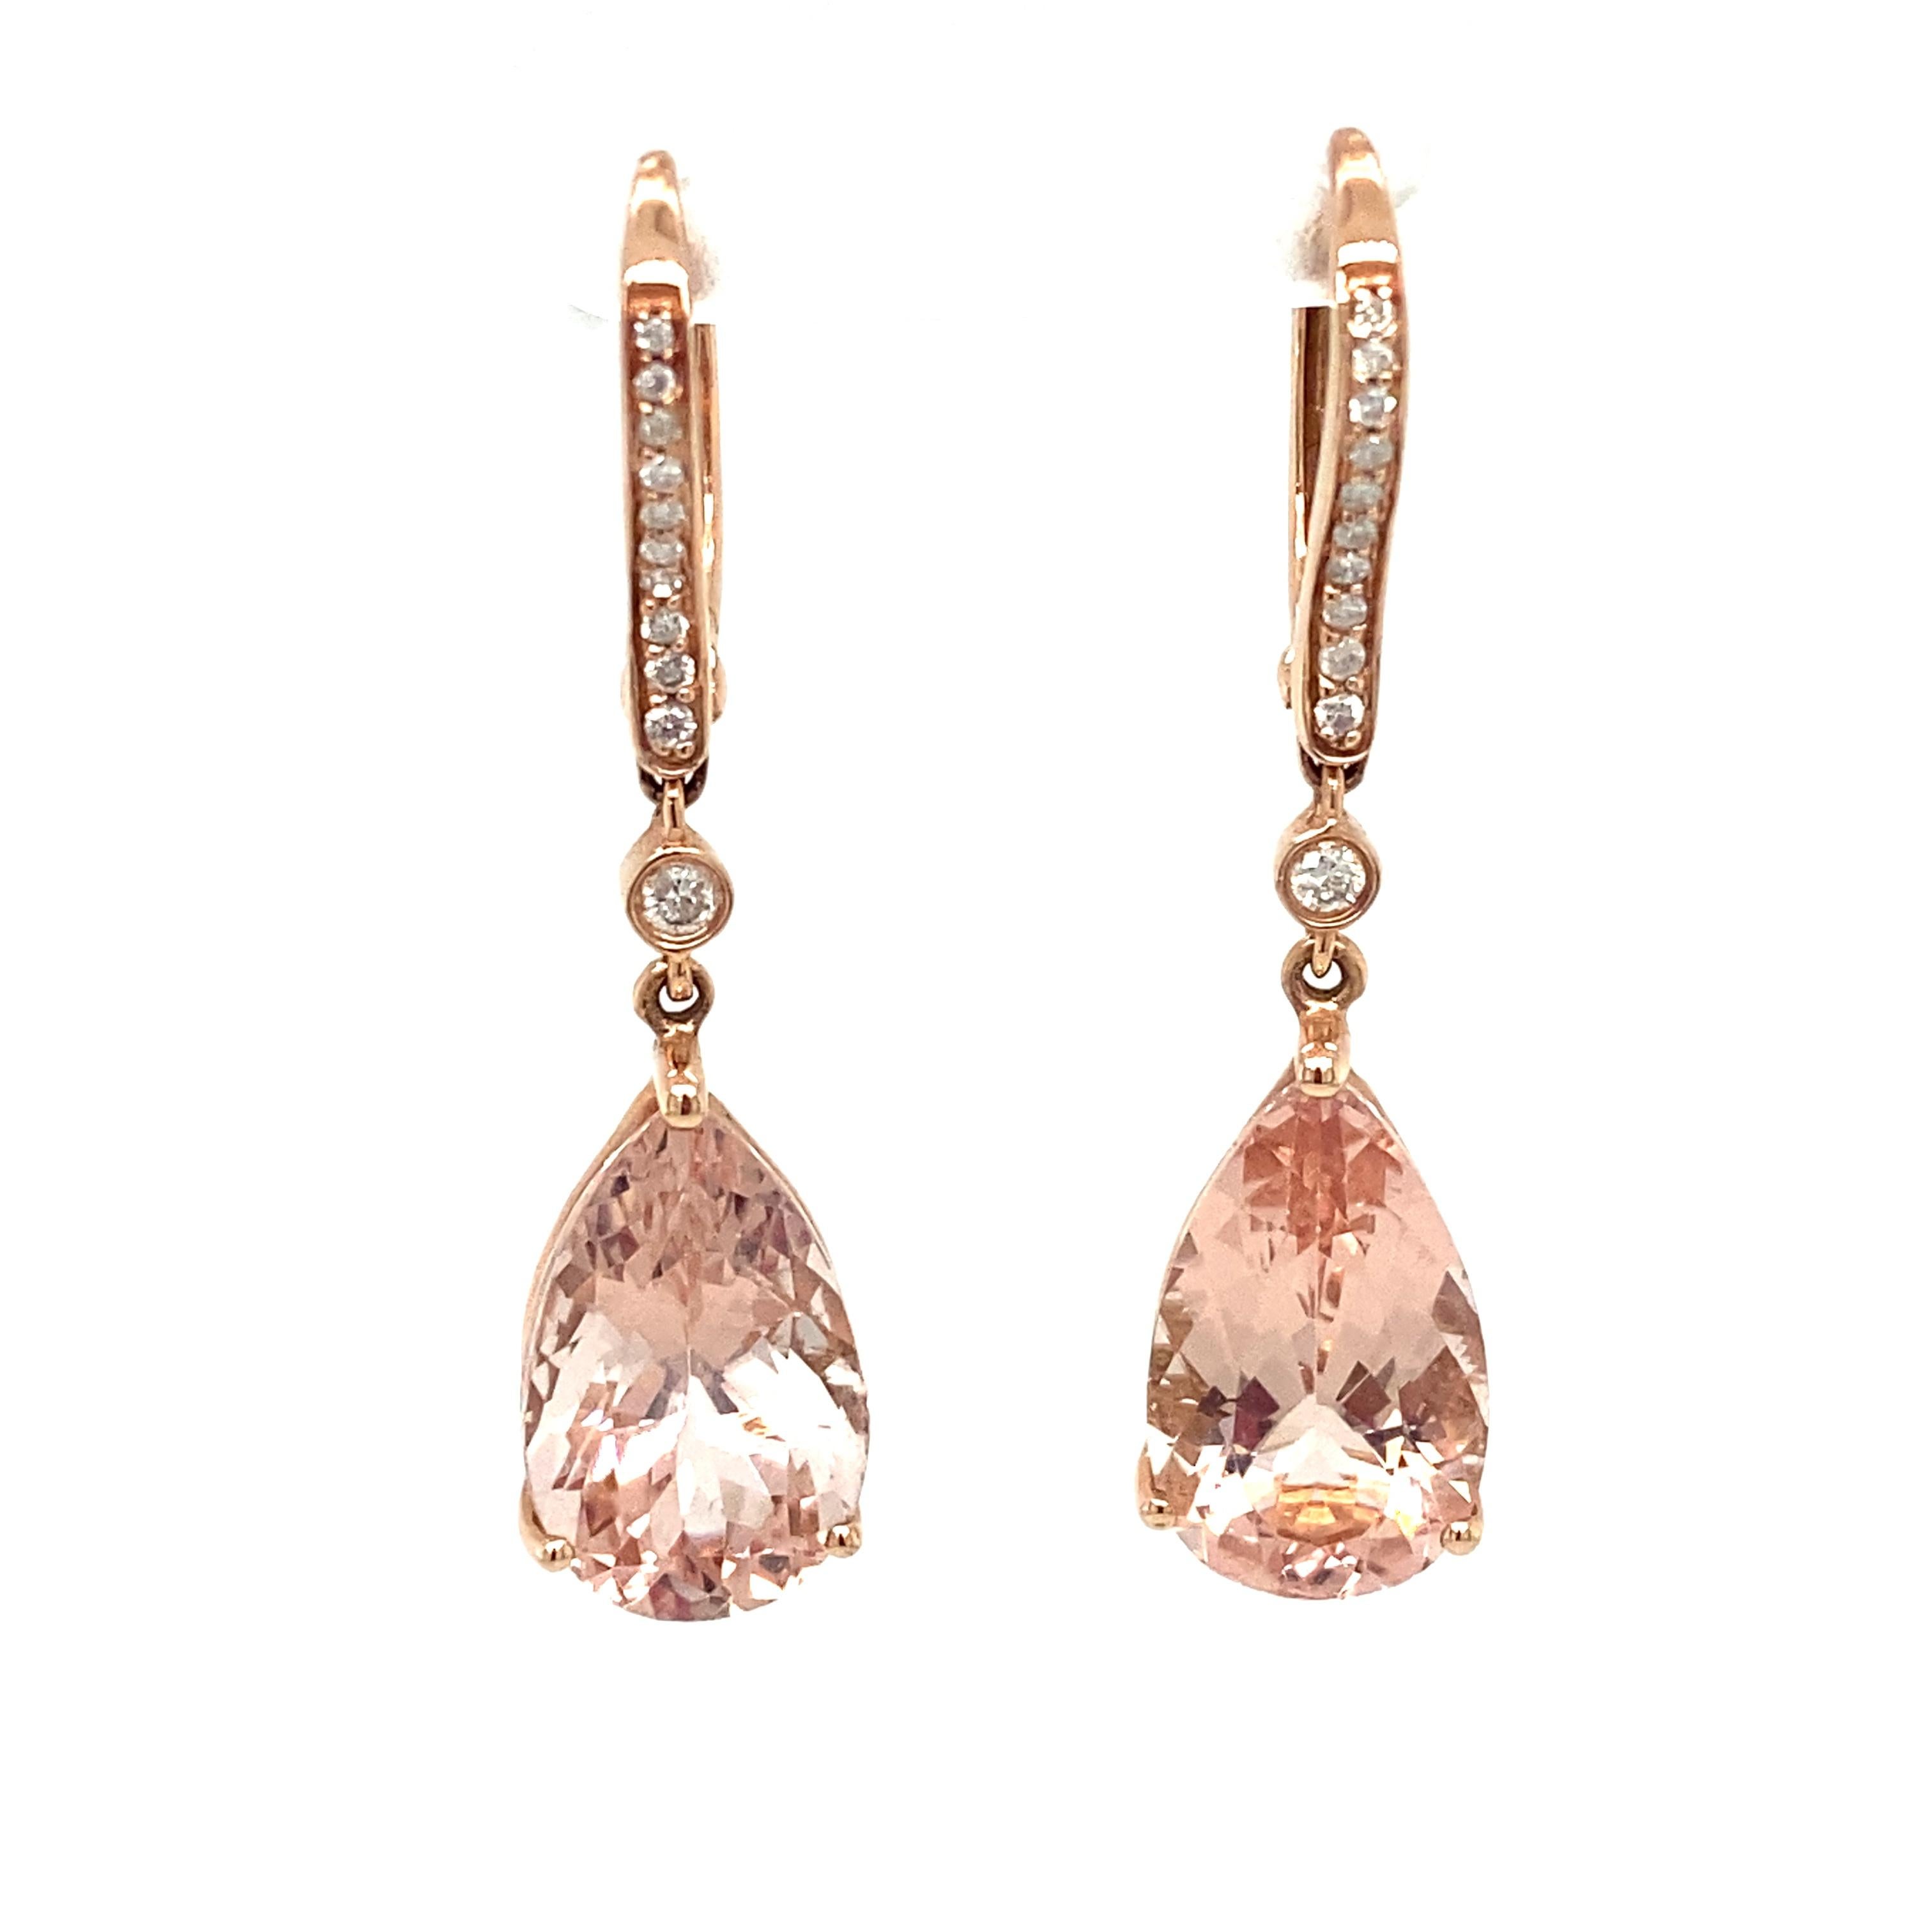 Artikel-Details: Diese Ohrringe bestehen aus wunderschönen rosa Morganiten im Birnenschliff mit Diamanten als Akzent.

CIRCA: 2000er Jahre
Metall Typ: 14k Roségold
Gewicht: 5.7 g
Größe: 1,5 Zoll L

Details zum Diamanten:

Karat: 0,30 Karat